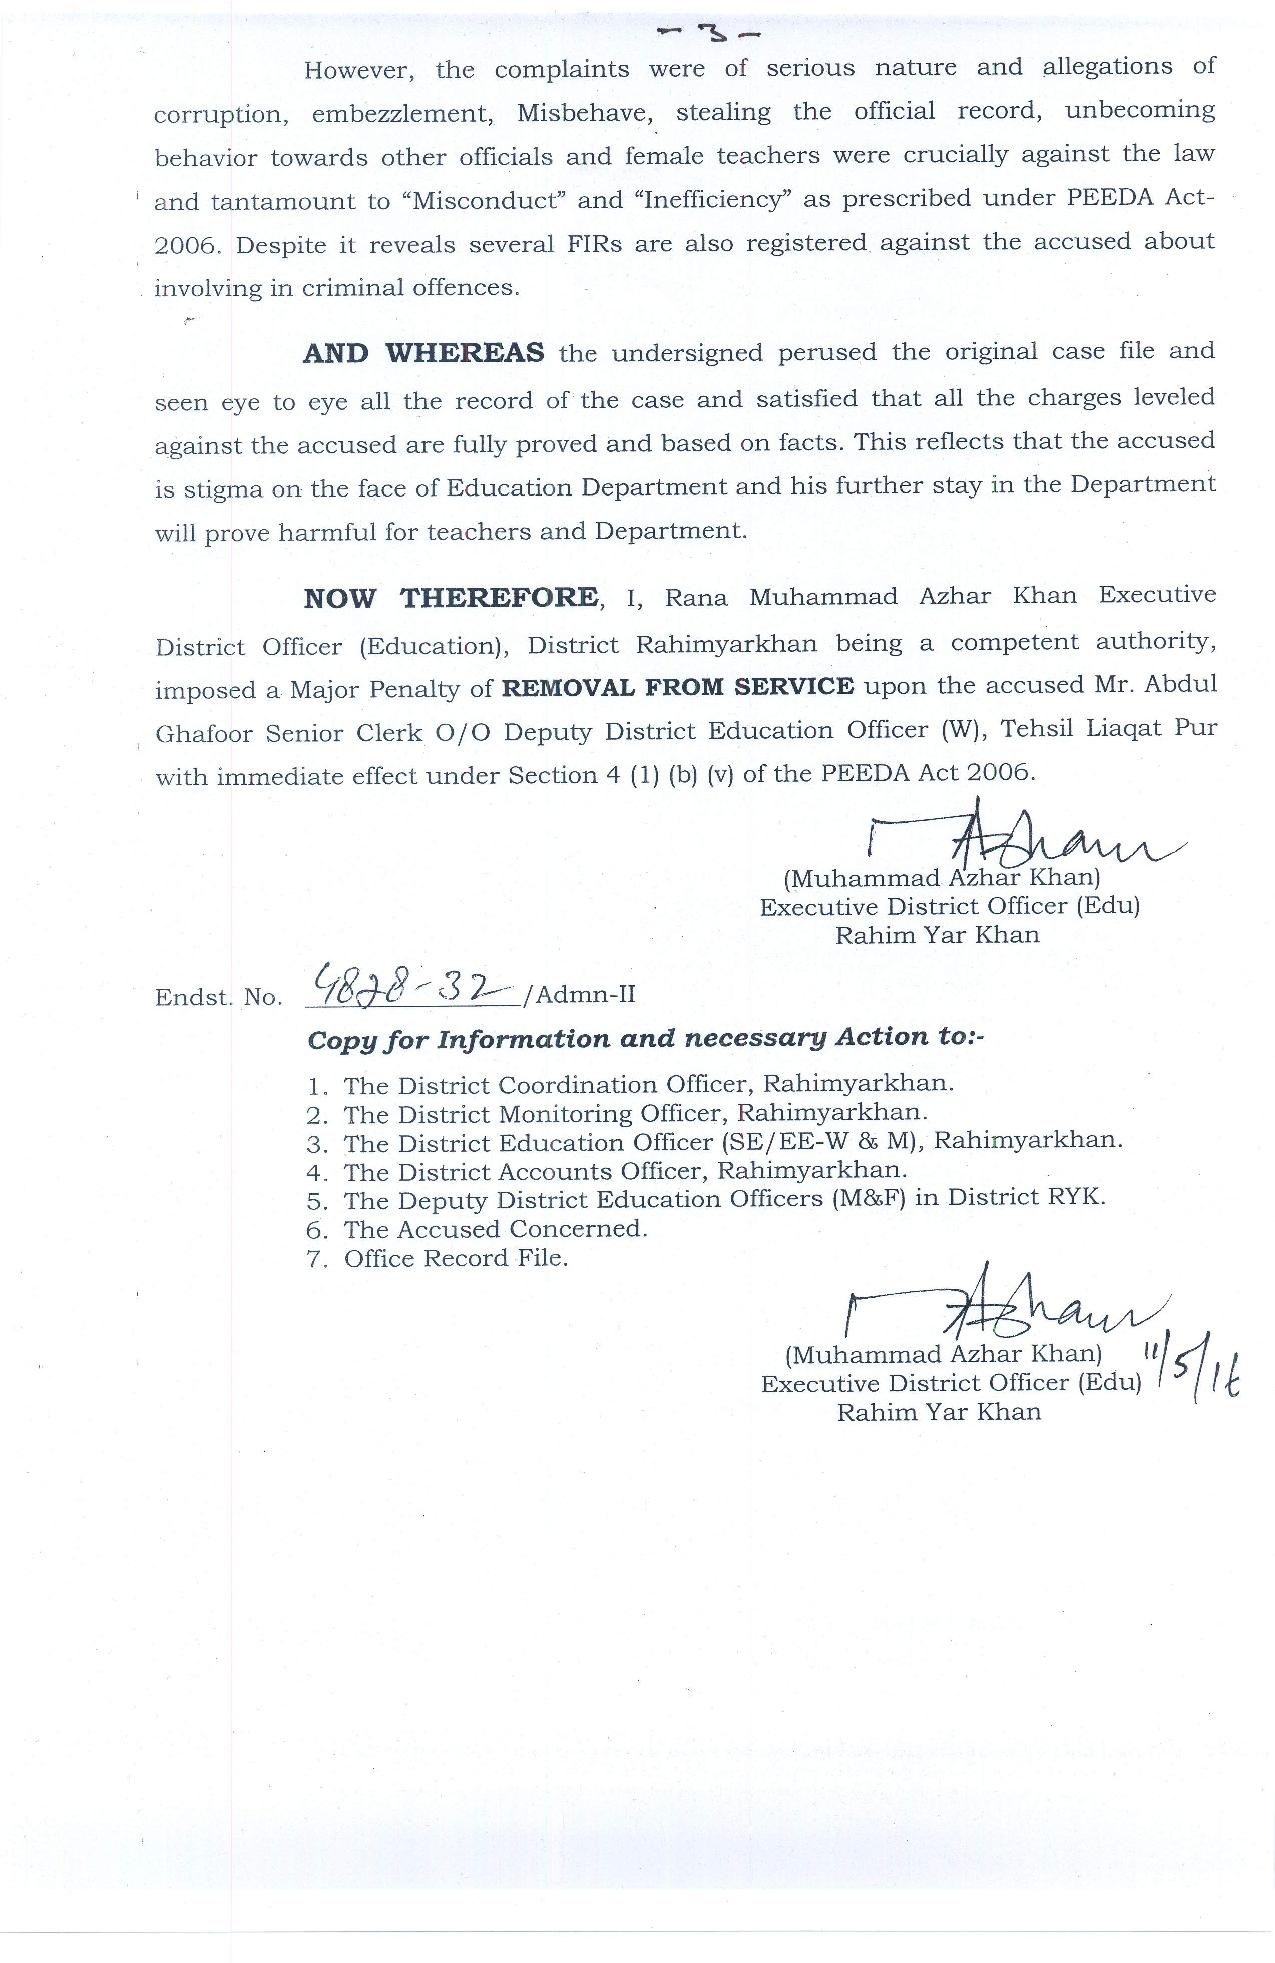 Removal from Service orders of Abdul Ghafoor Senior Clerk